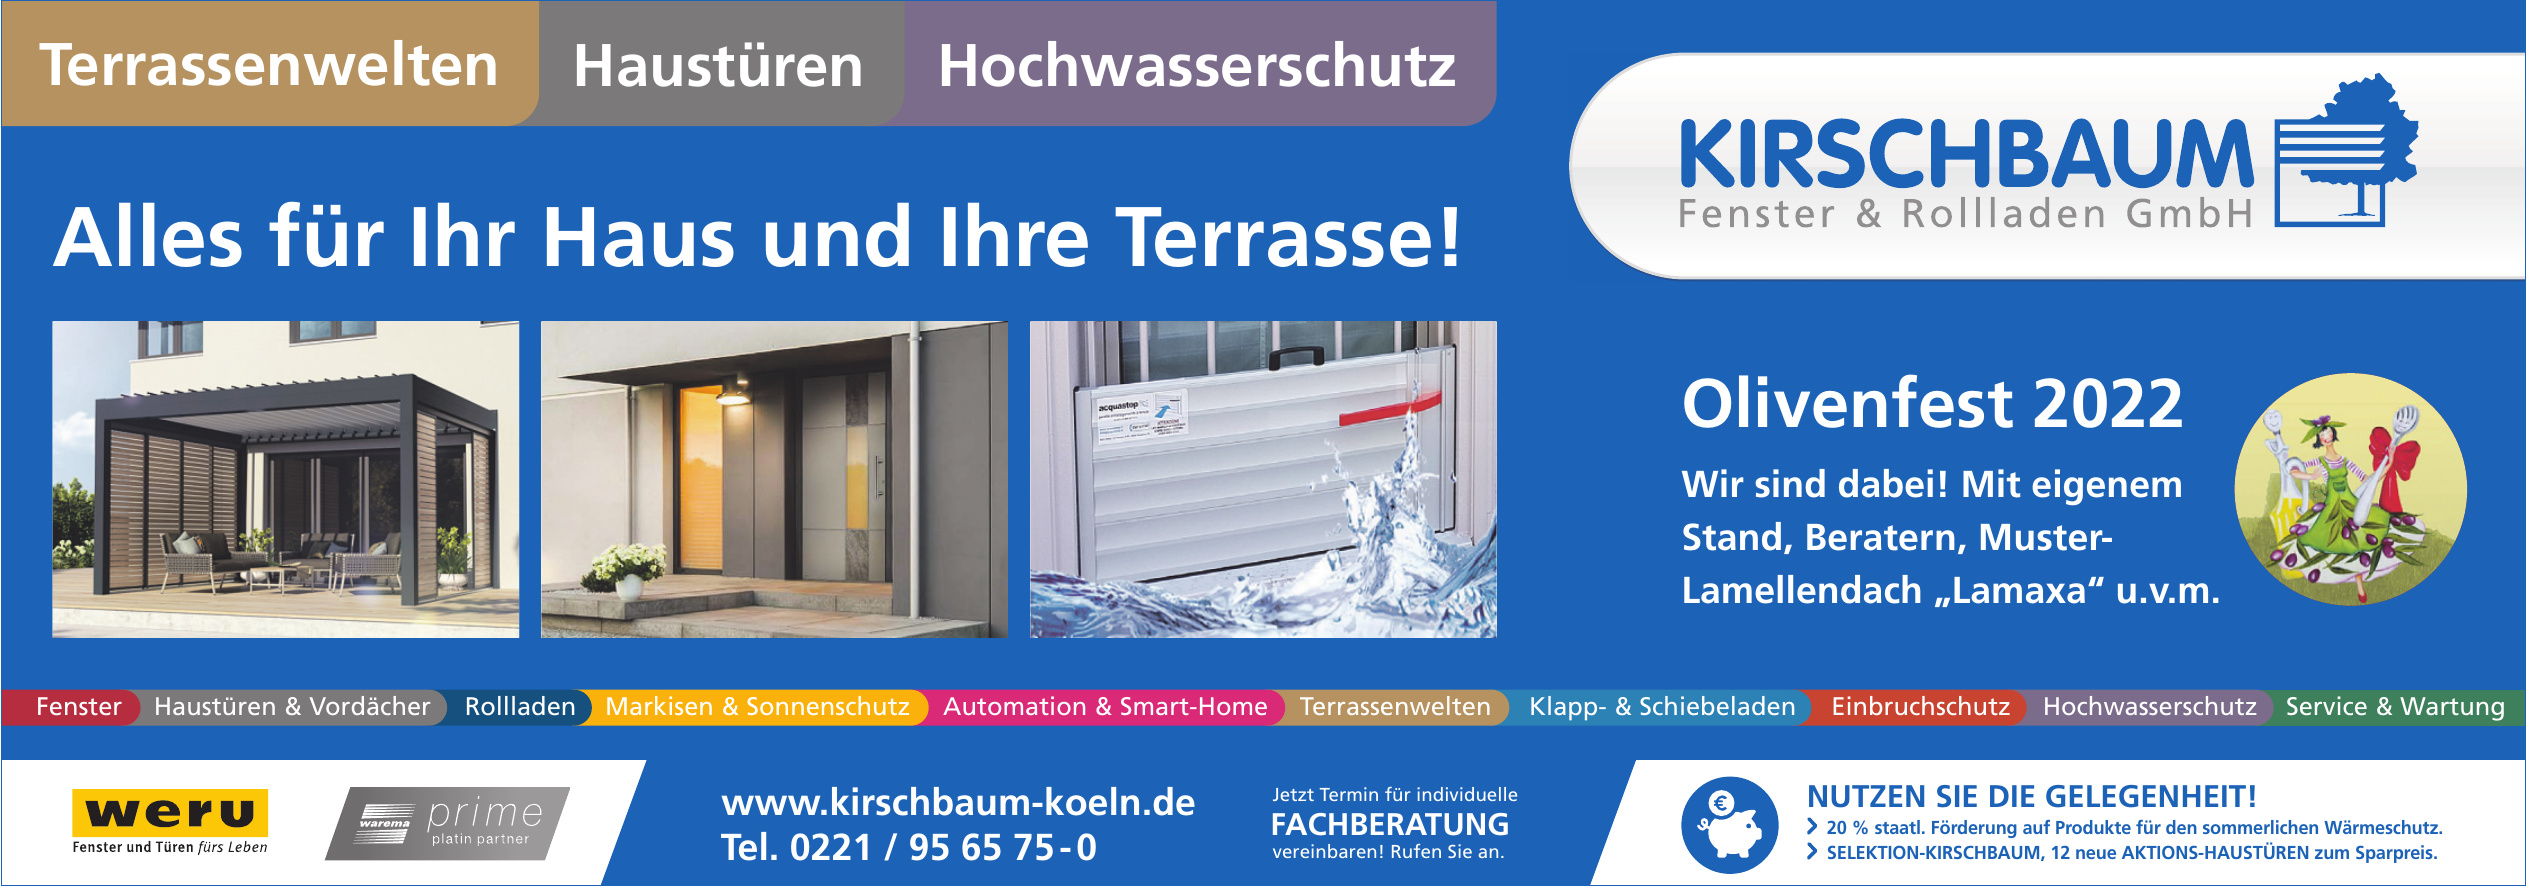 Kirschbaum Fenster & Rollladen GmbH